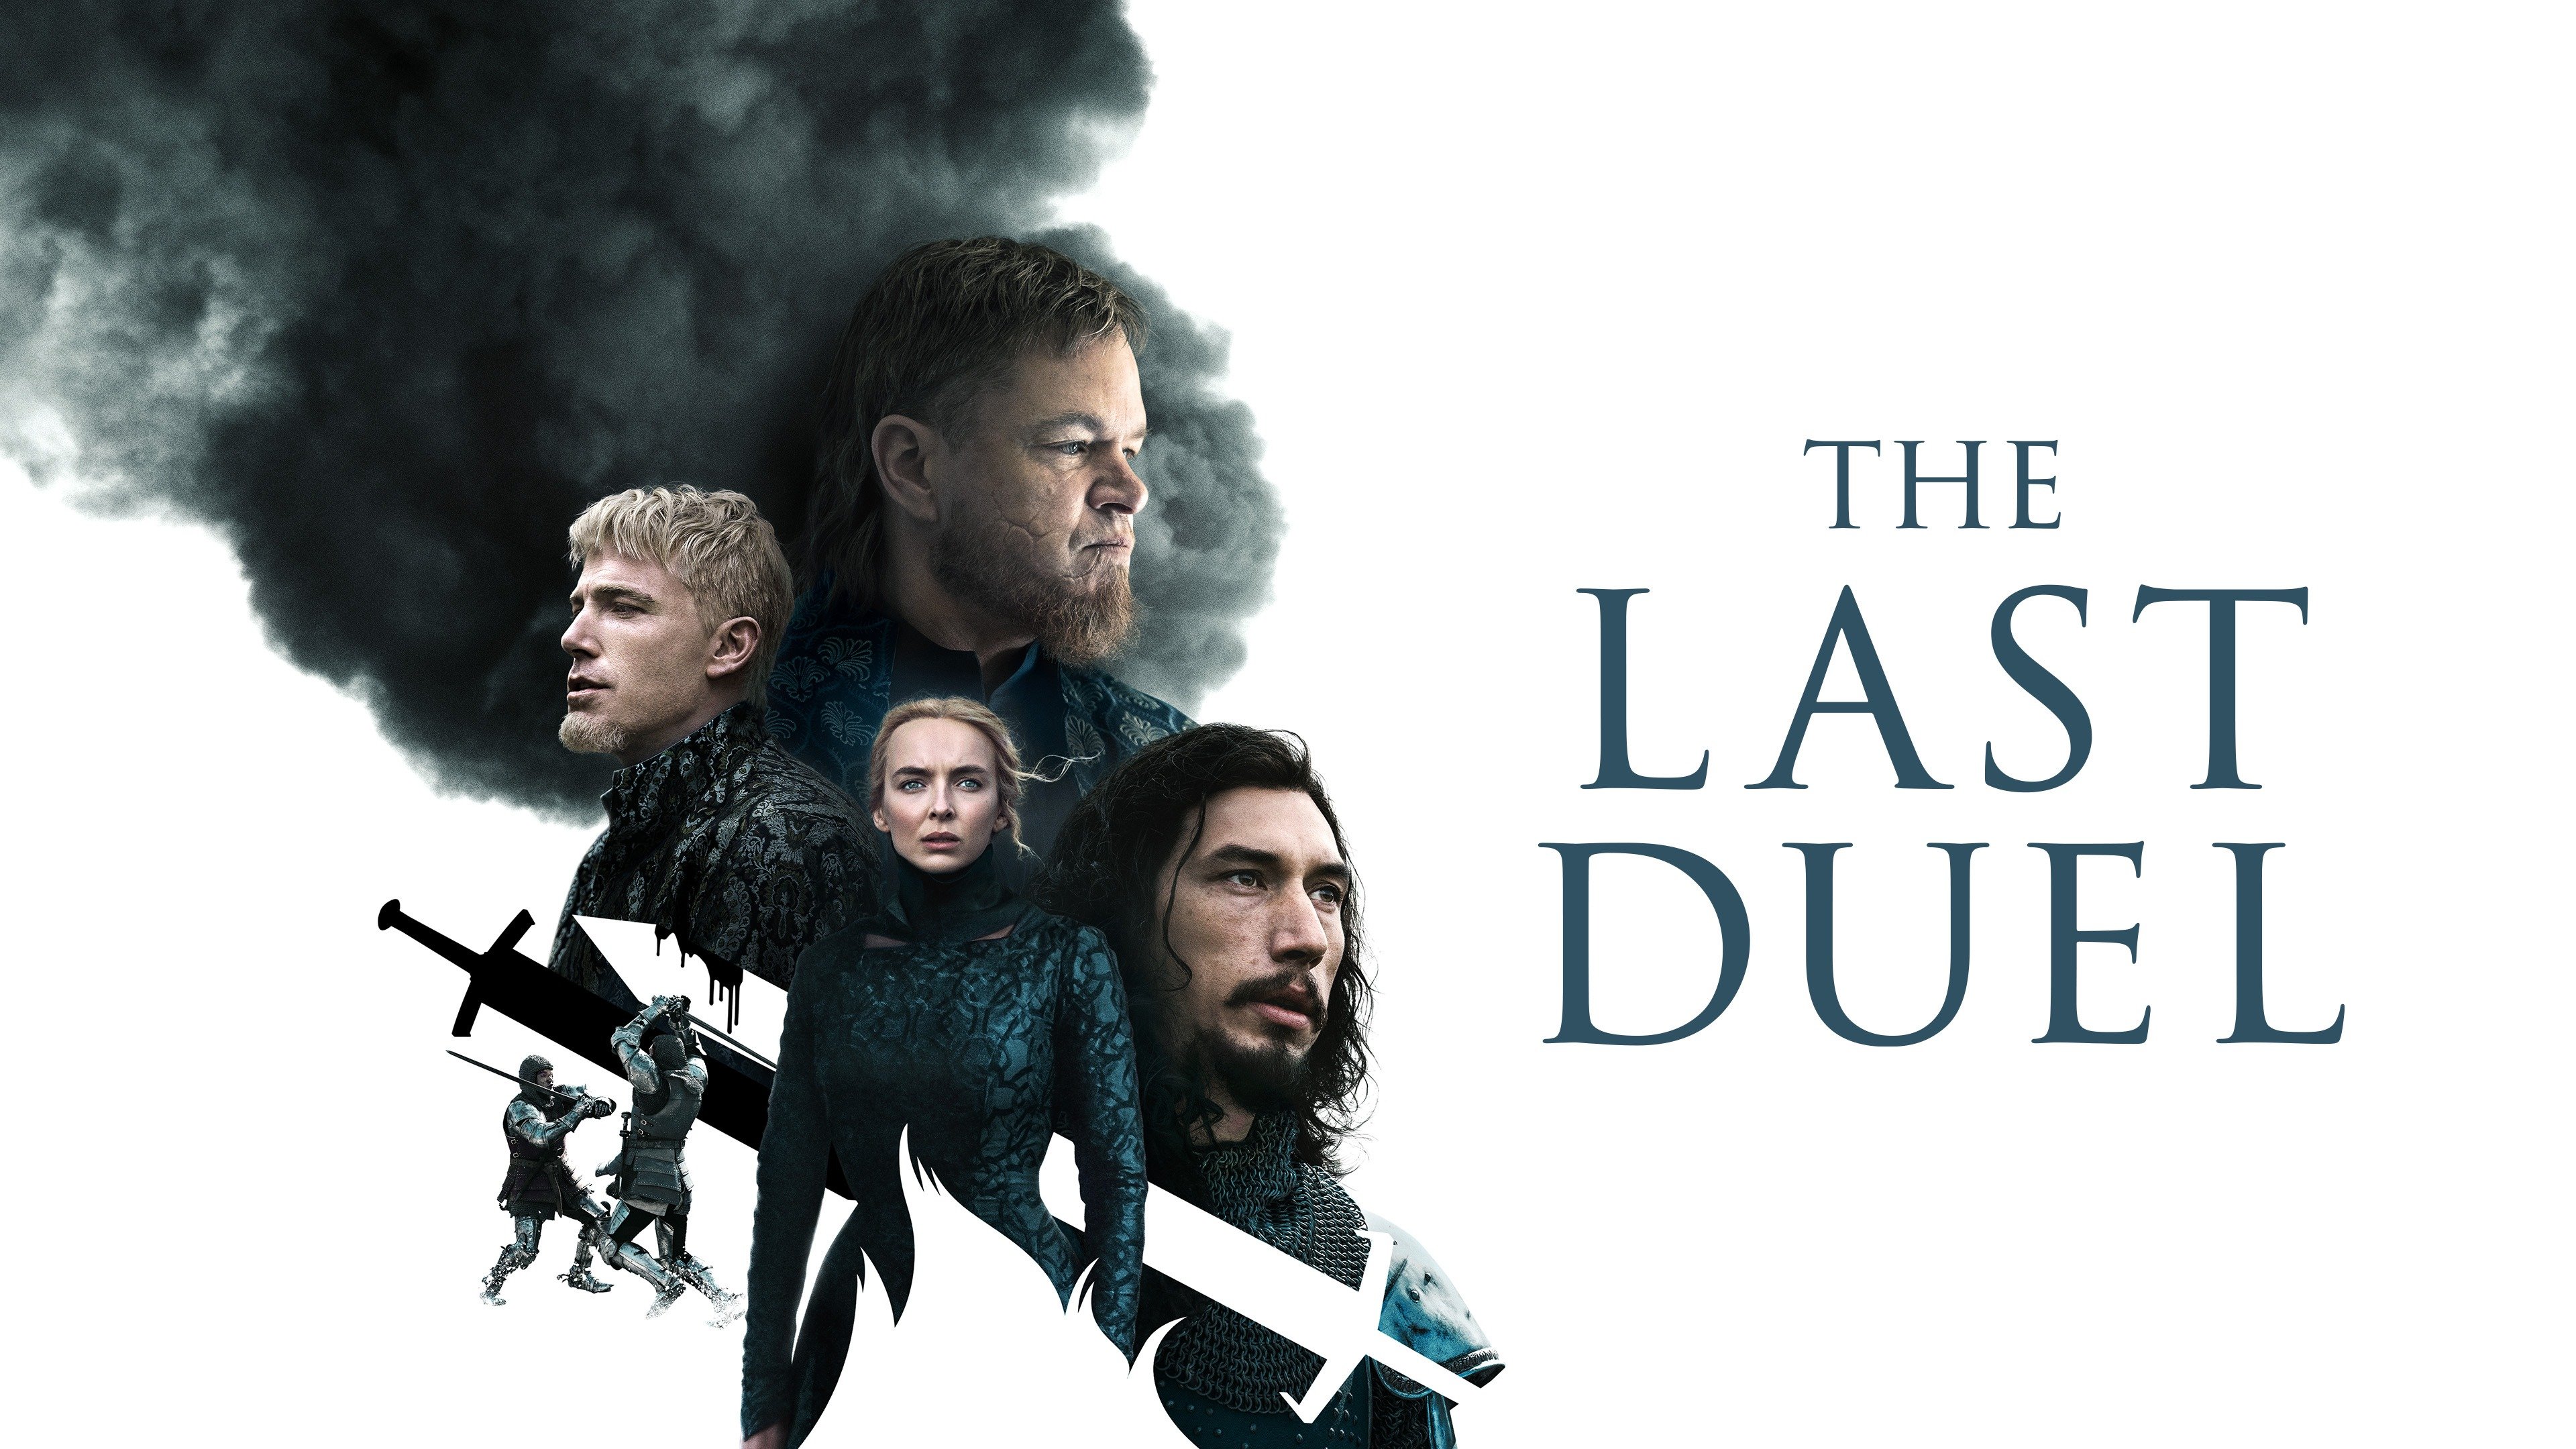 The Last Duel - Exclusive Behind the Scenes Clip (2021) Matt Damon, Adam  Driver 